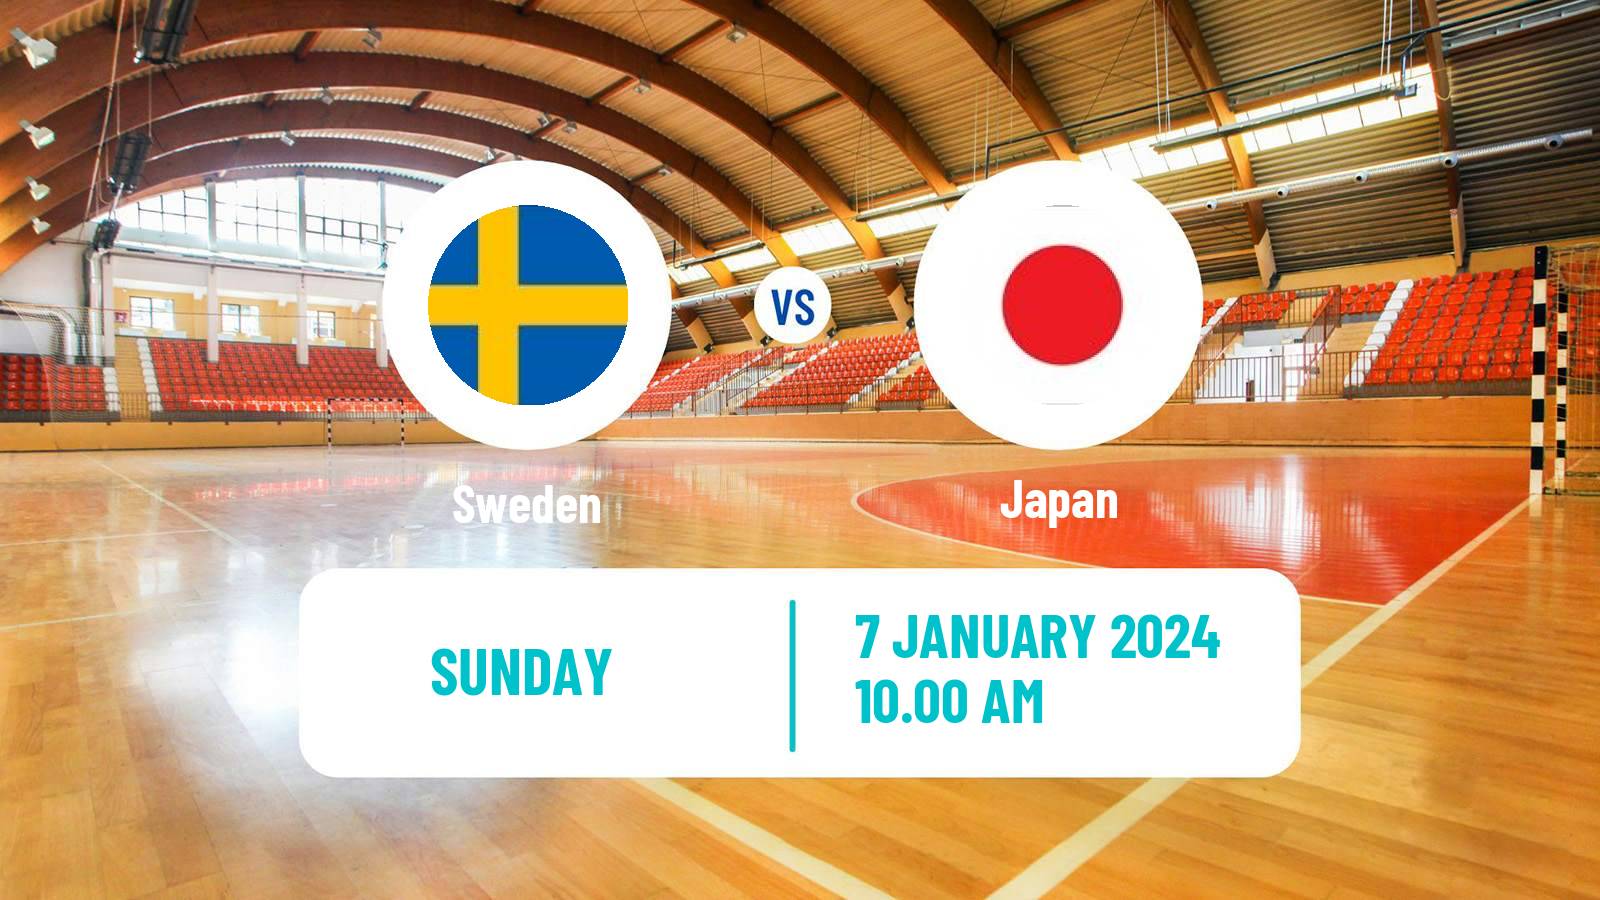 Handball Friendly International Handball Sweden - Japan